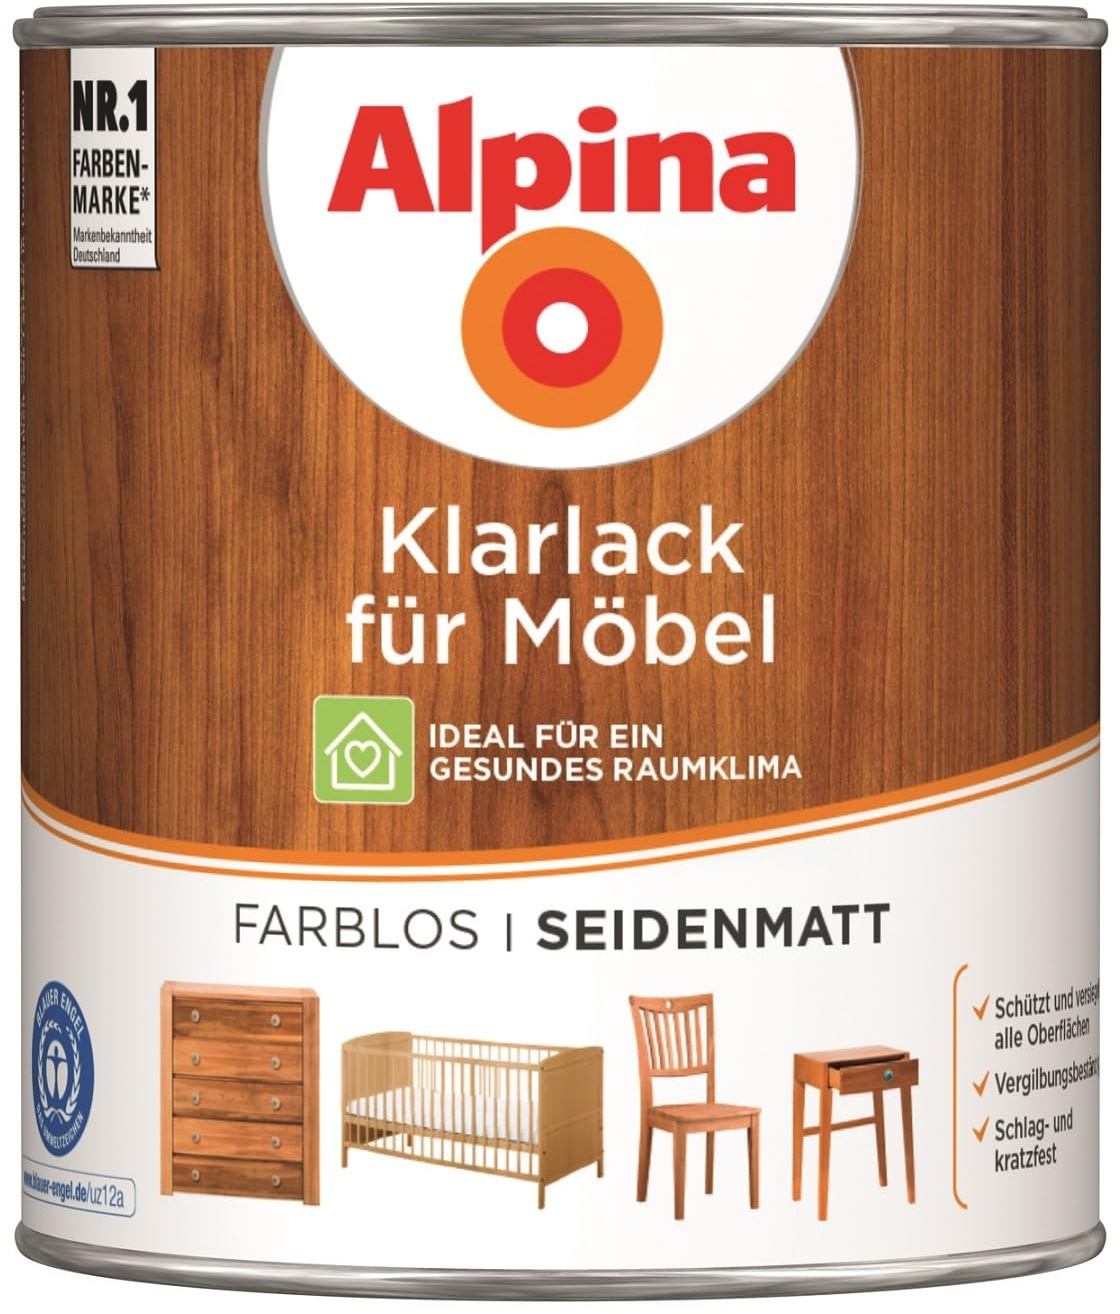 Alpina Klarlack für Möbel 750ml seidenmatt